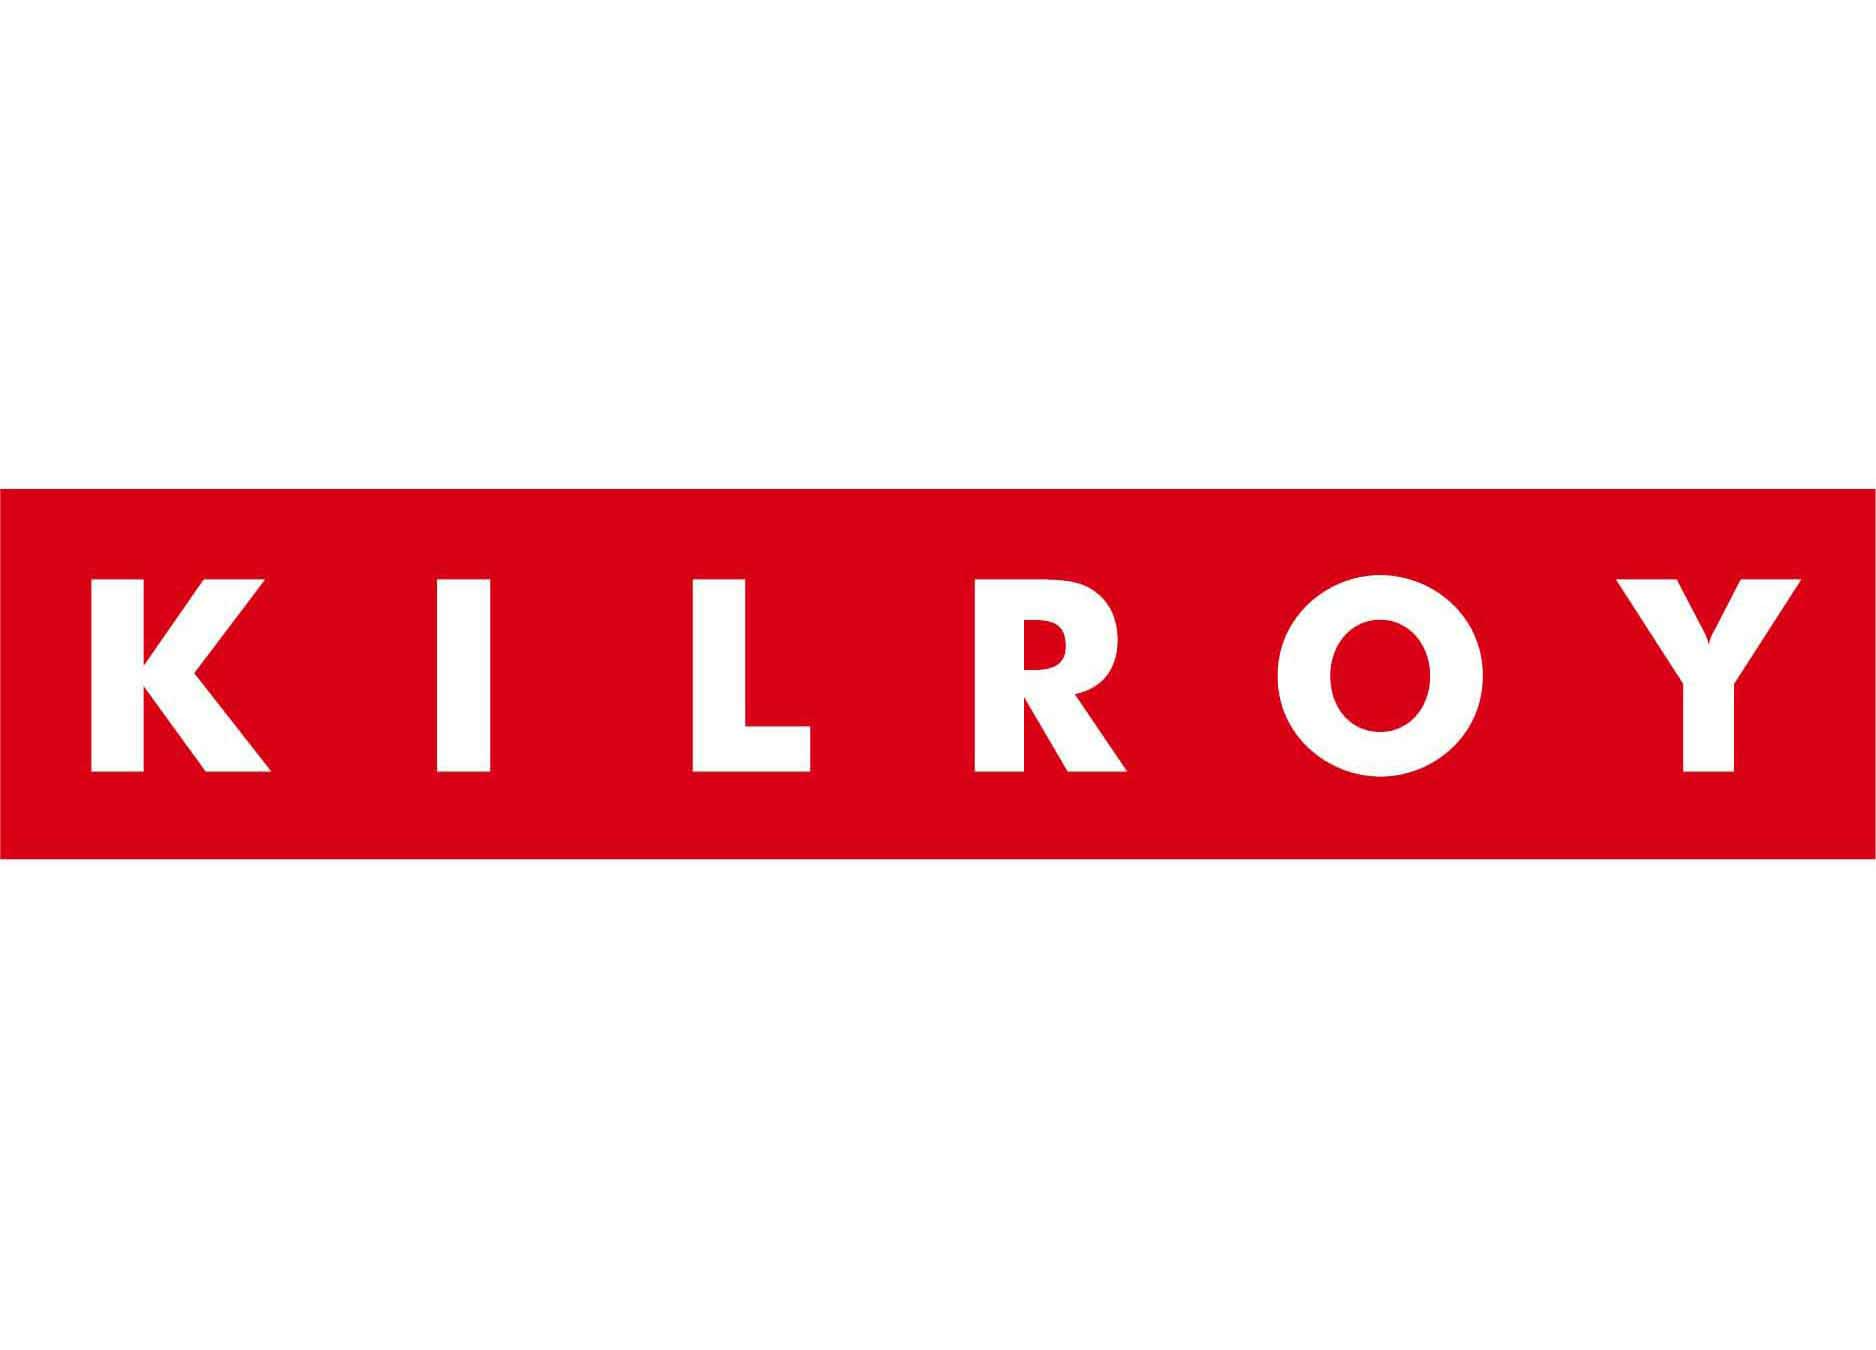 Kilroy logo